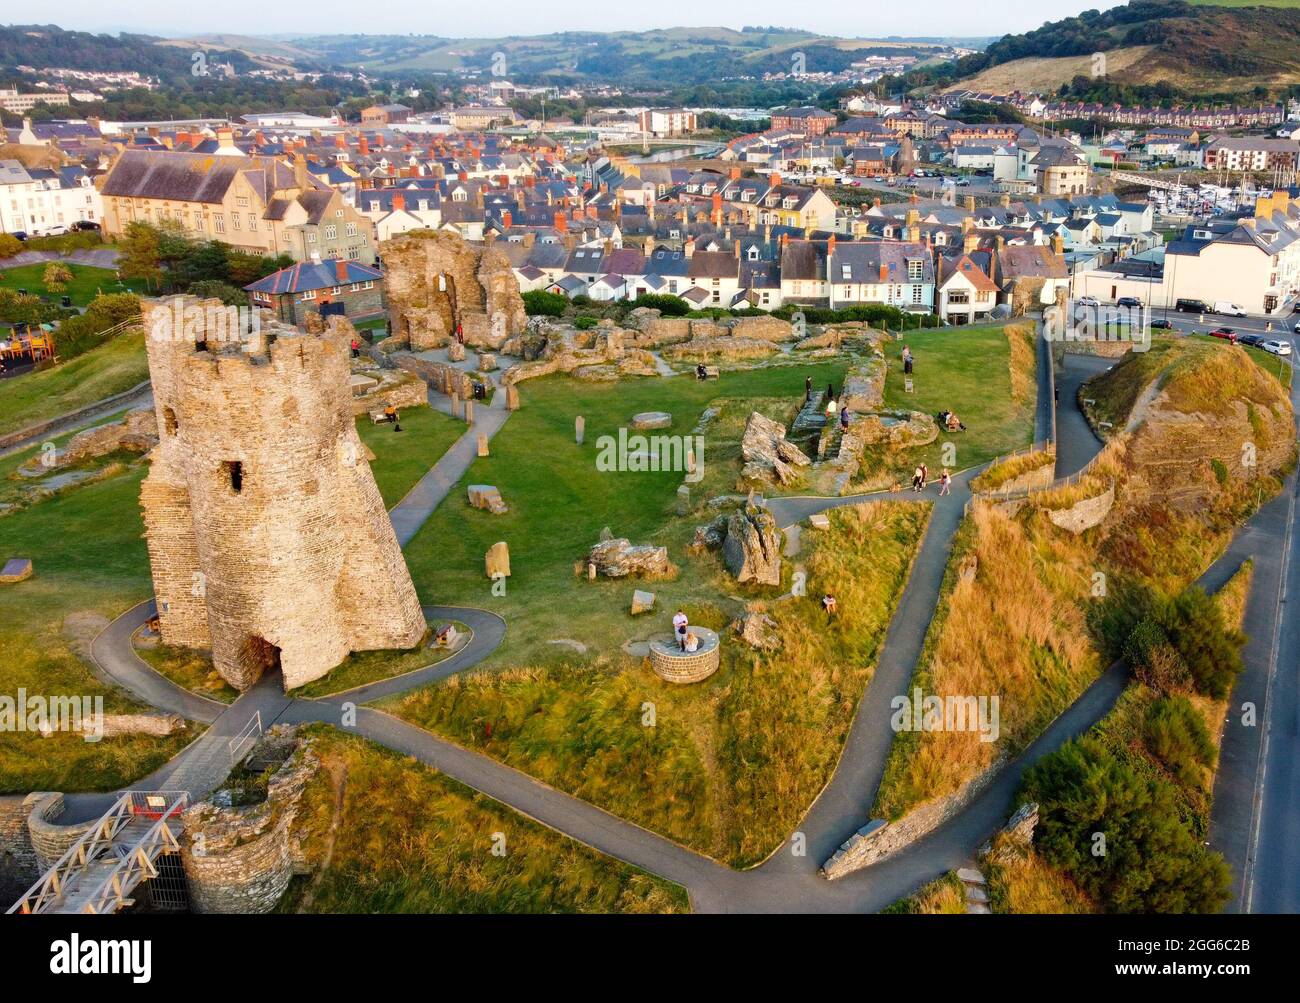 Le site du château d'Aberystwyth est splendide le jour de l'été Banque D'Images